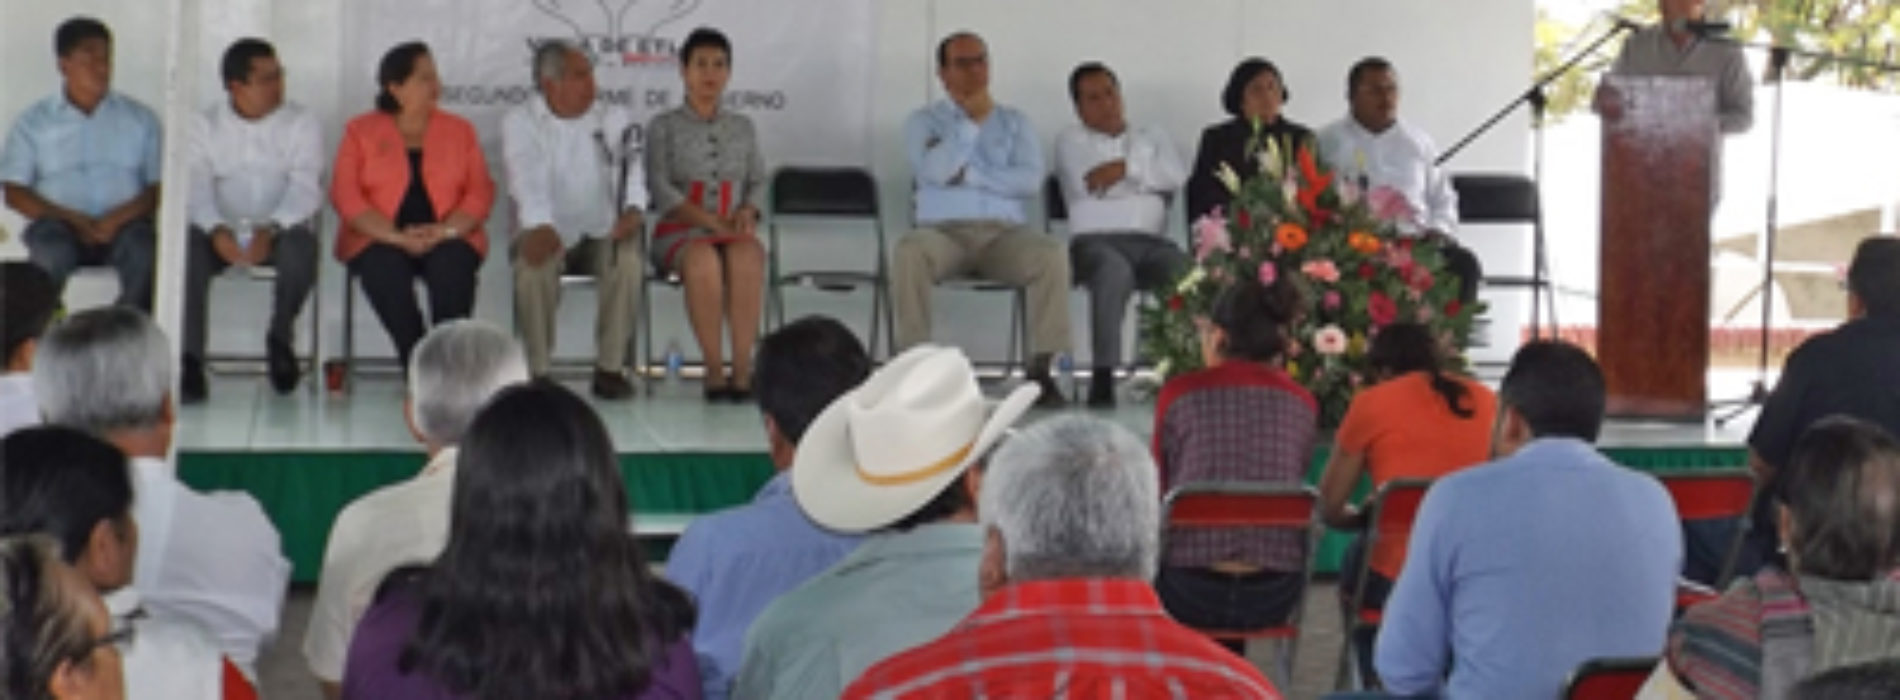 Villa de Etla avanza en la ruta de la paz y el progreso: Daniel Juárez